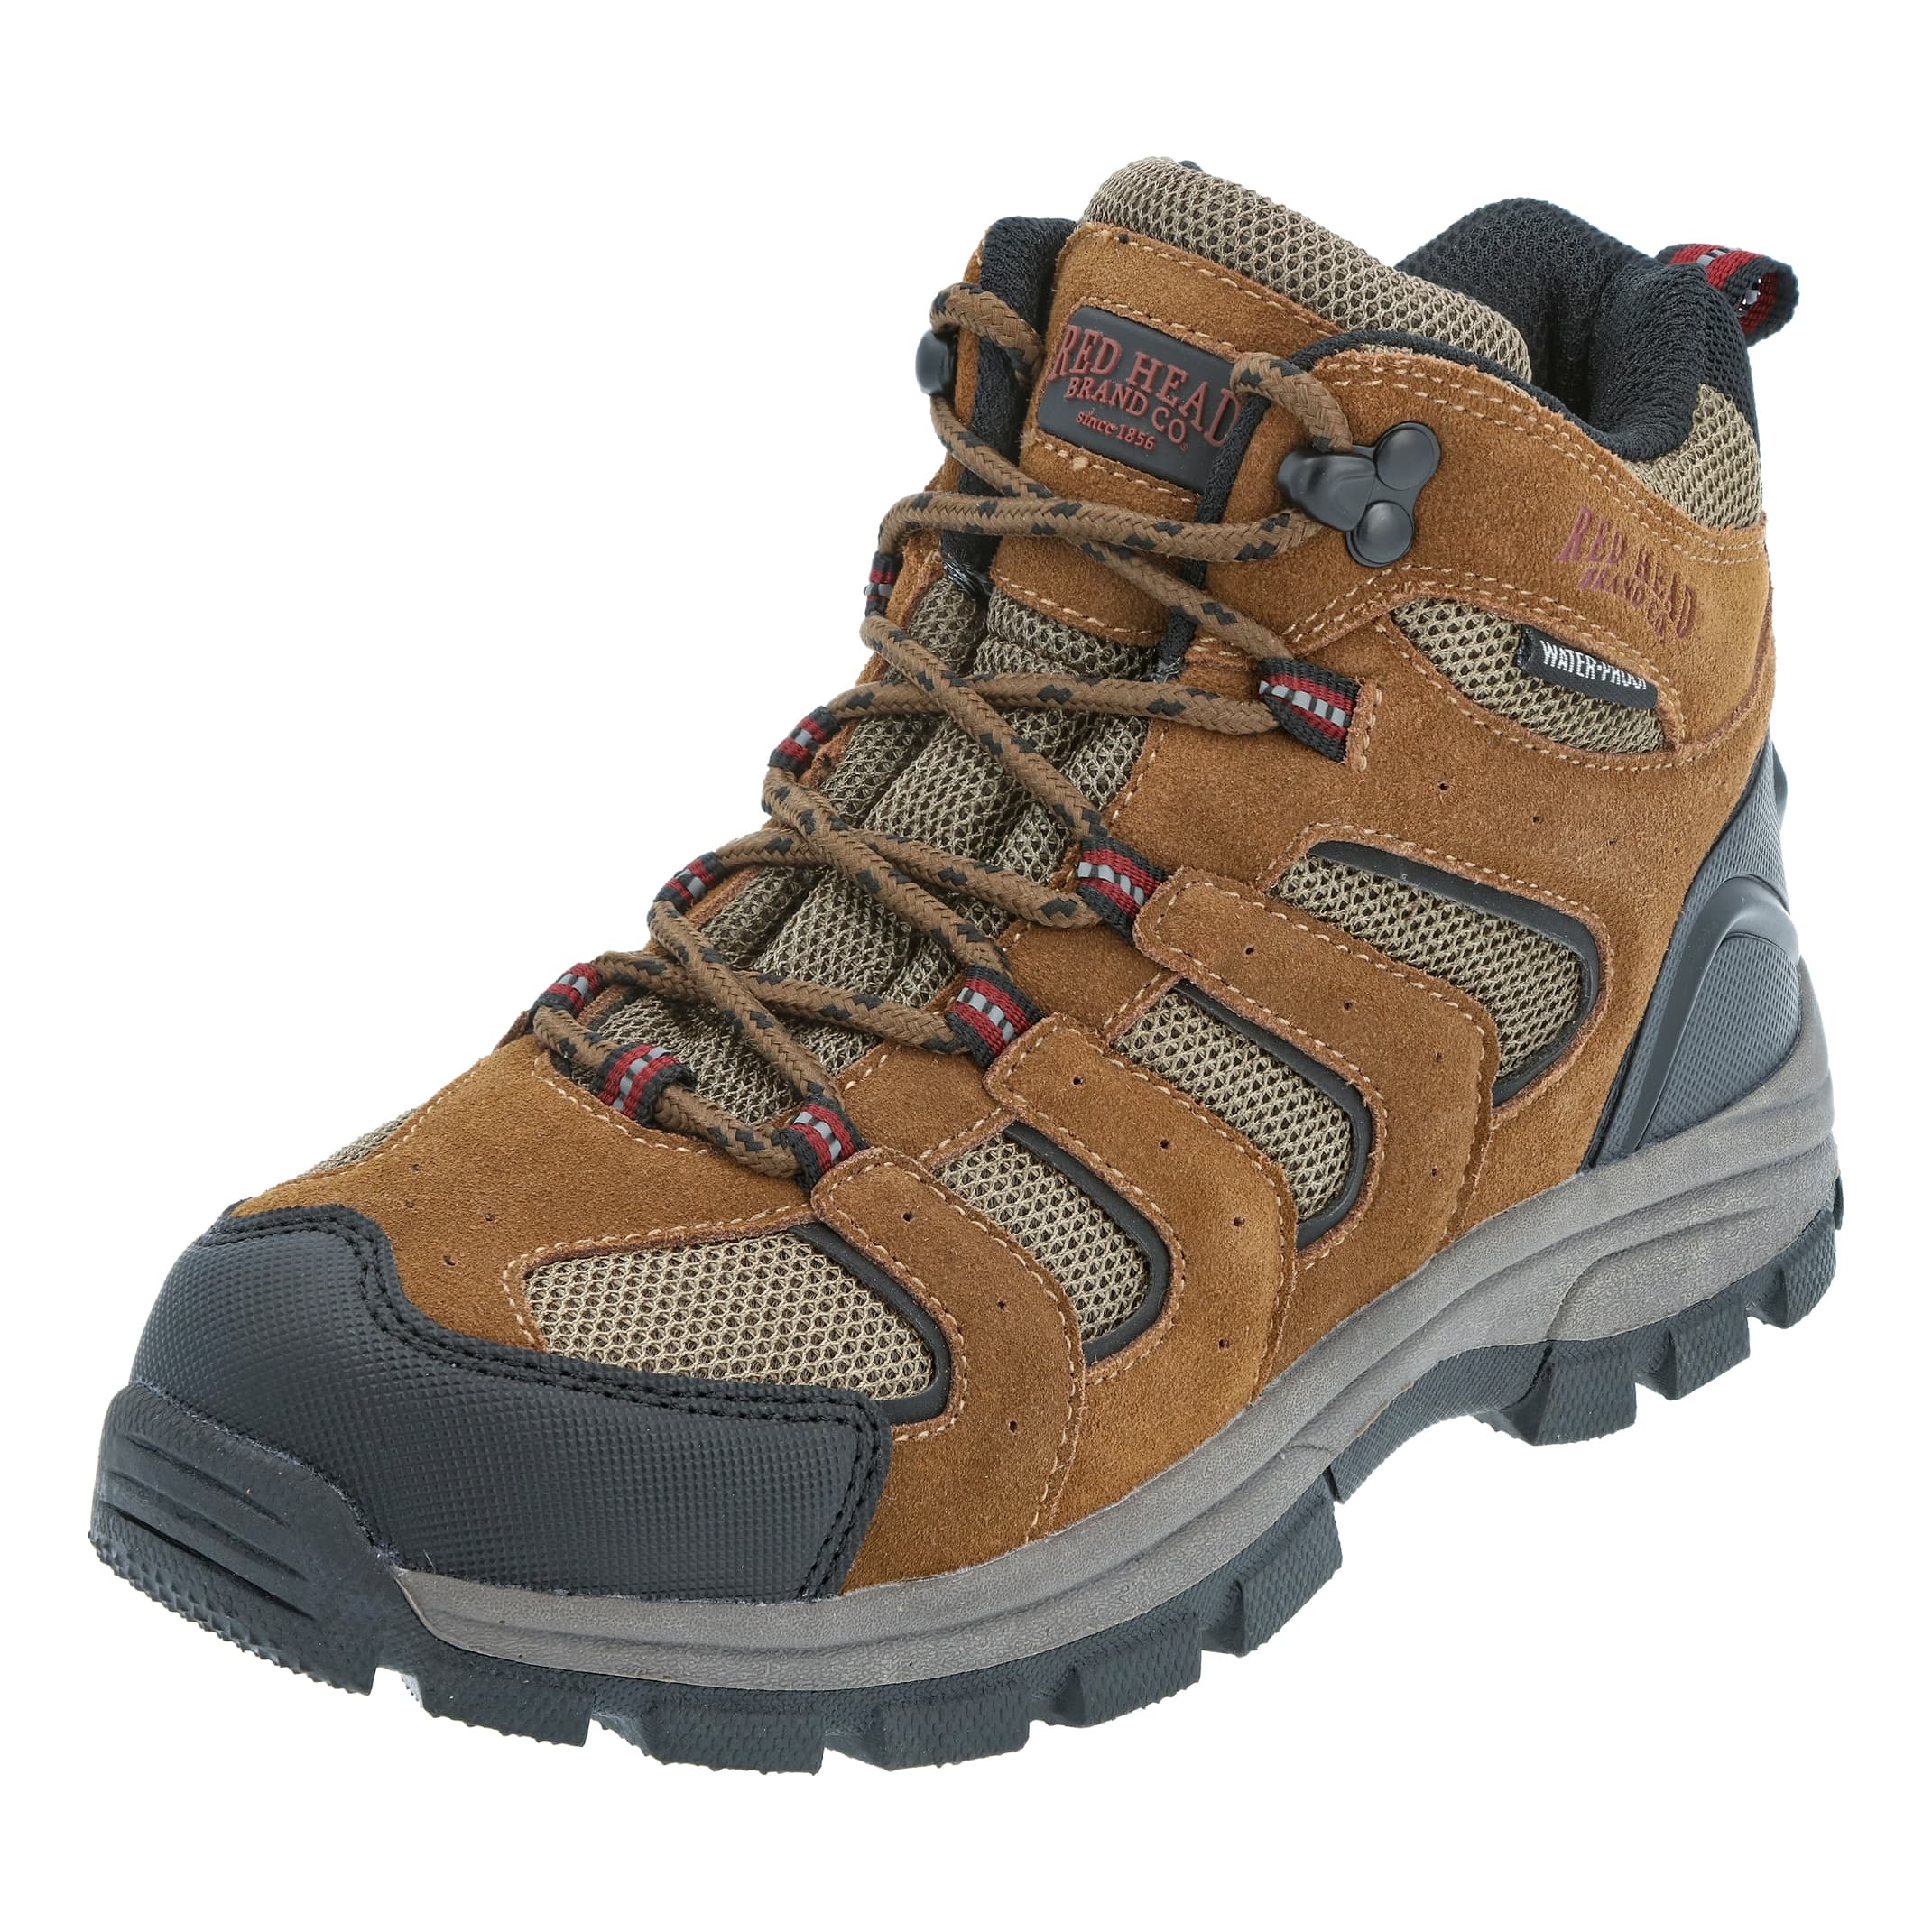 RedHead® Youth Zipline Waterproof Hiking Boots - Brown